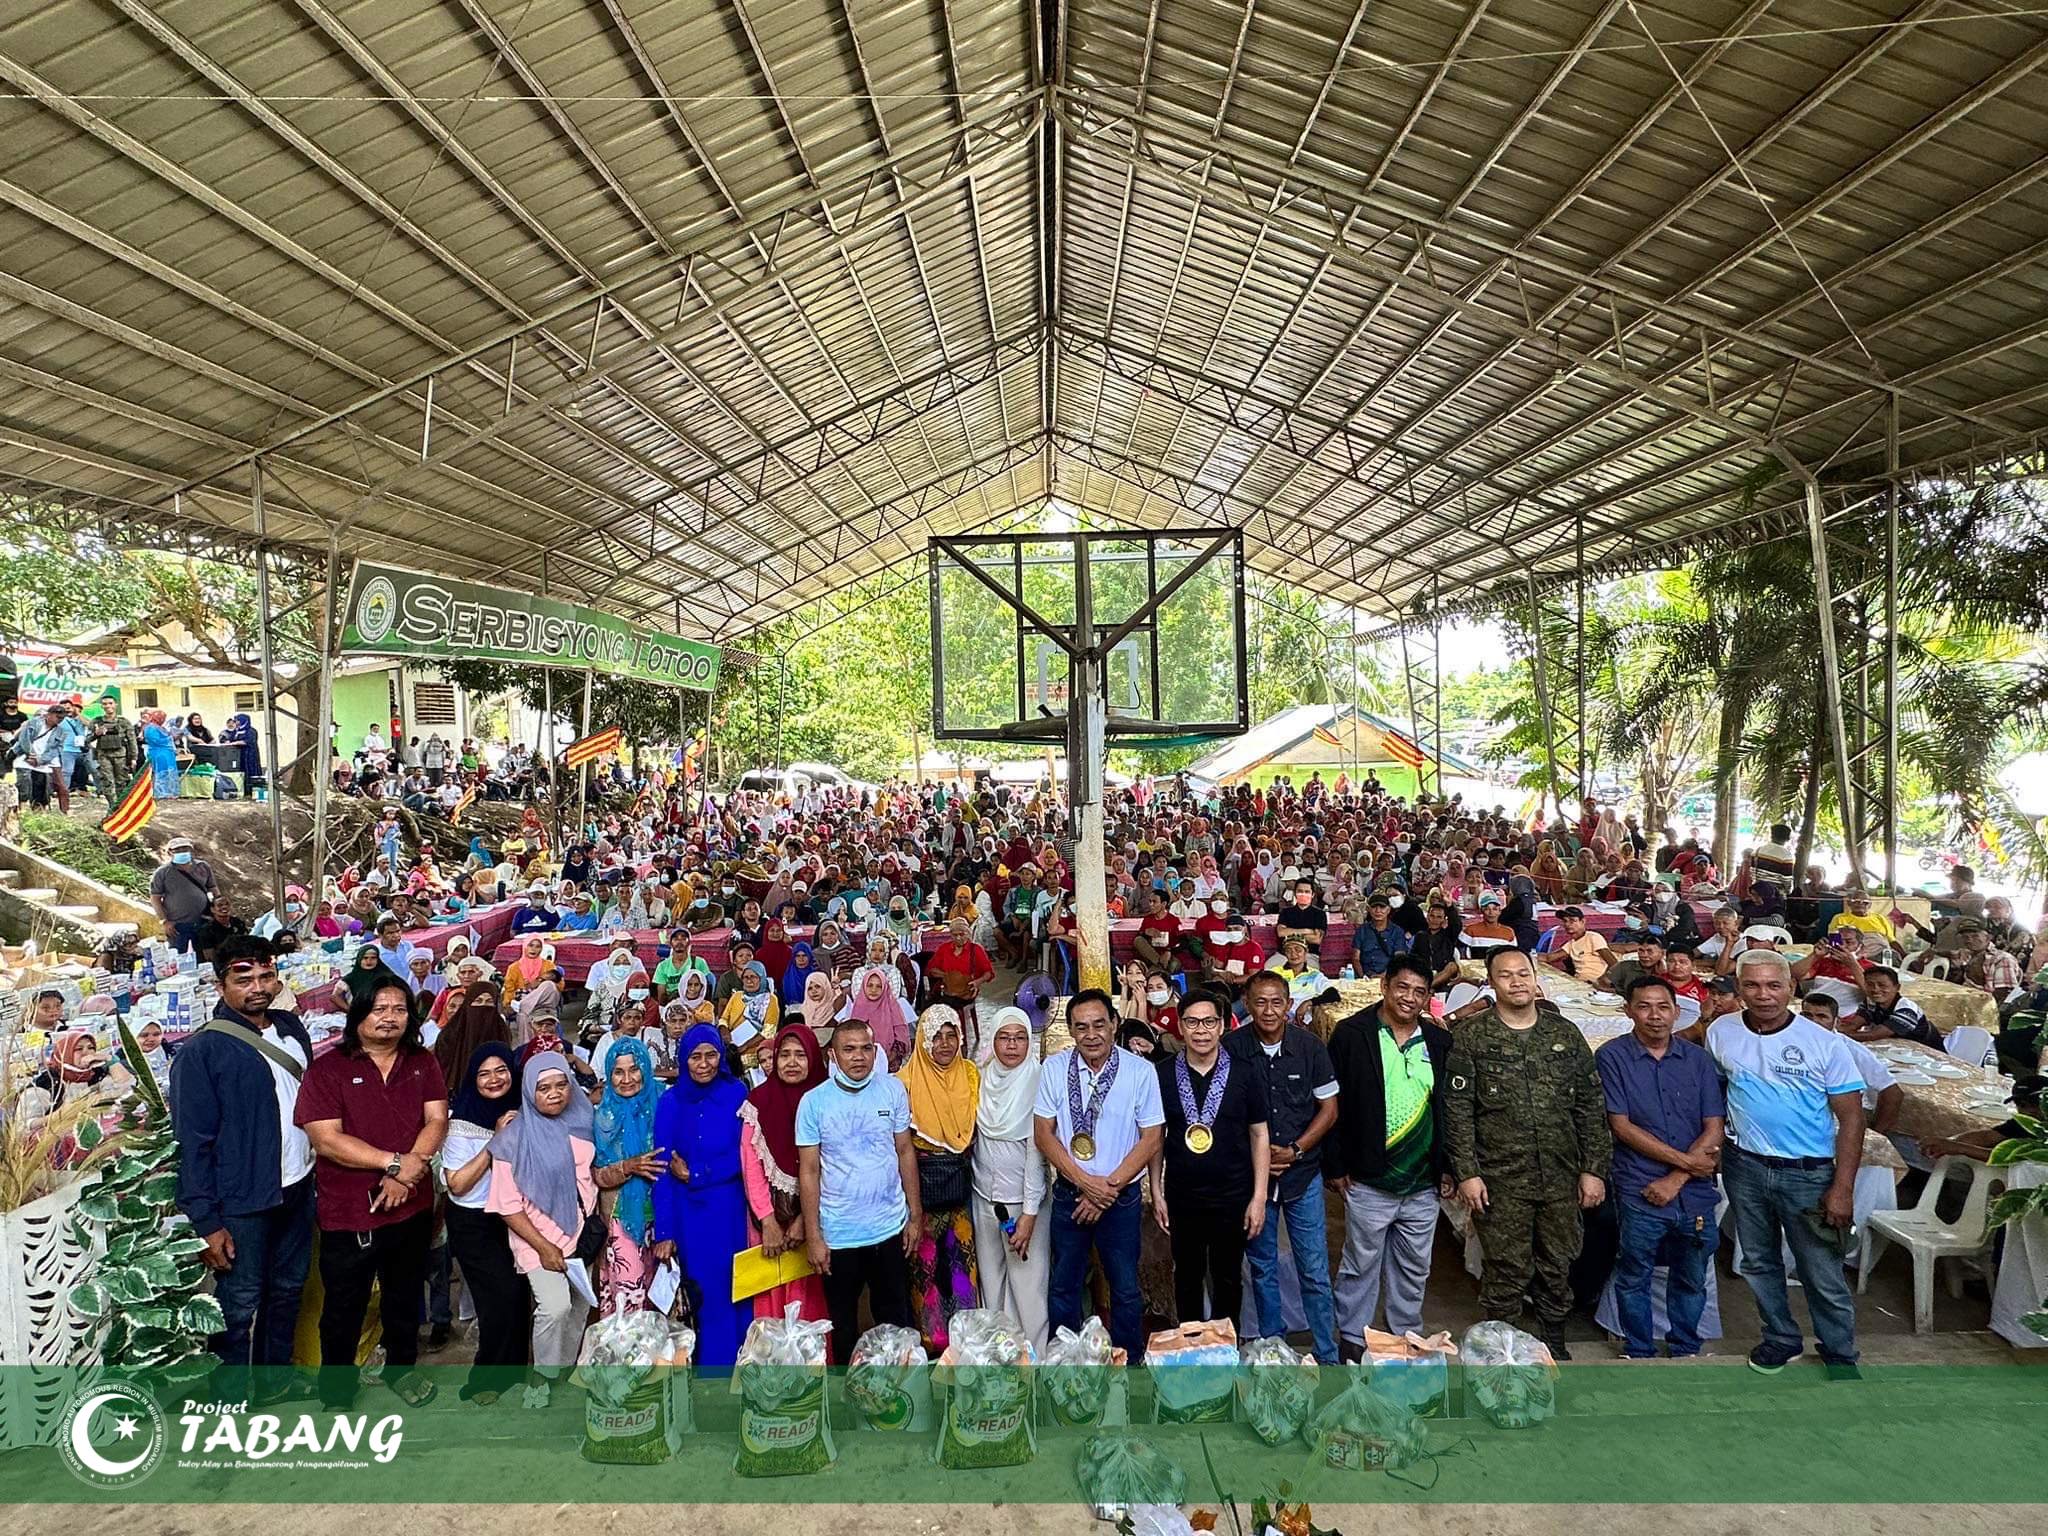 Project TABANG joins SGDA sa Barangay Medical Mission and Food Packs ...